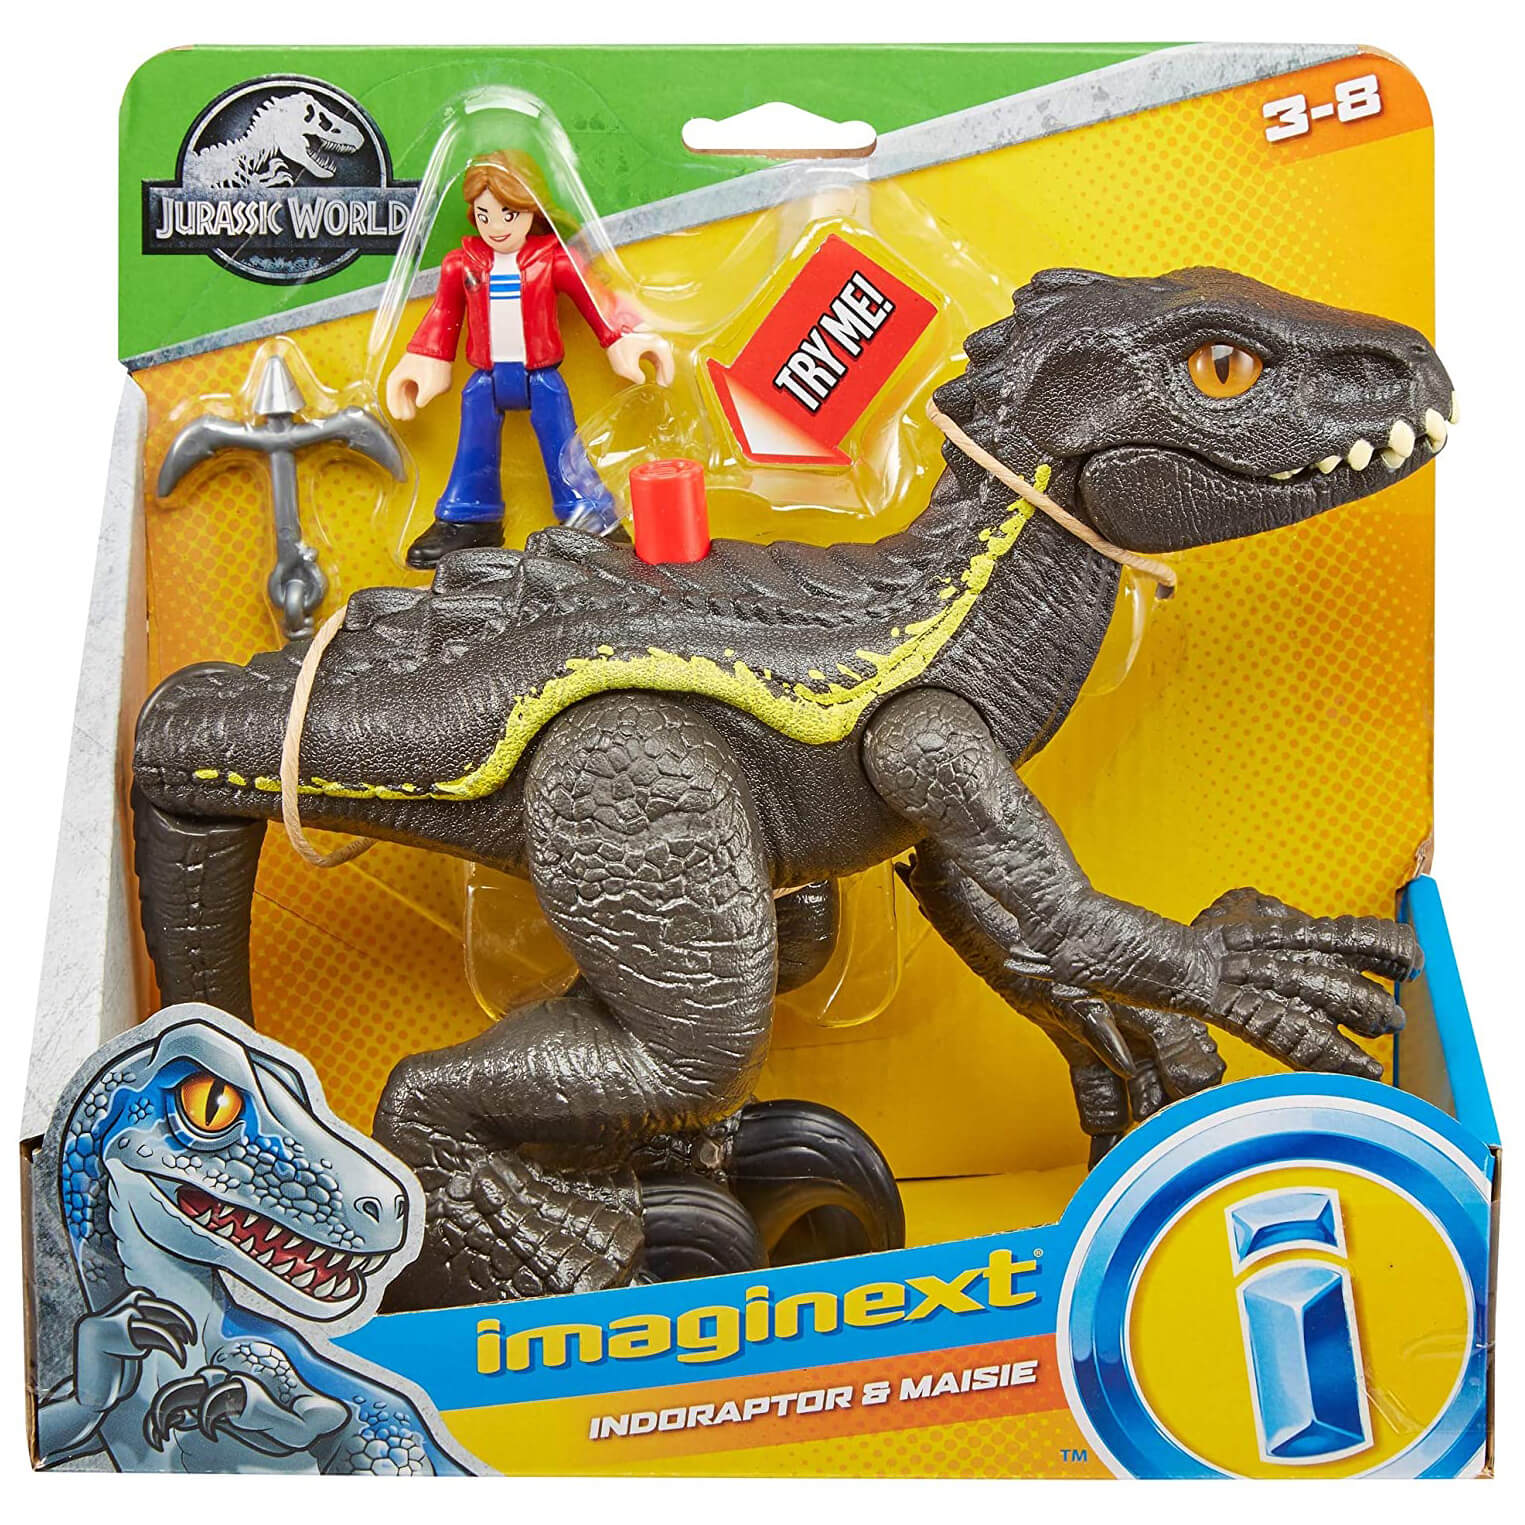 Jurassic World Imaginext Indoraptor & Maisie Figures